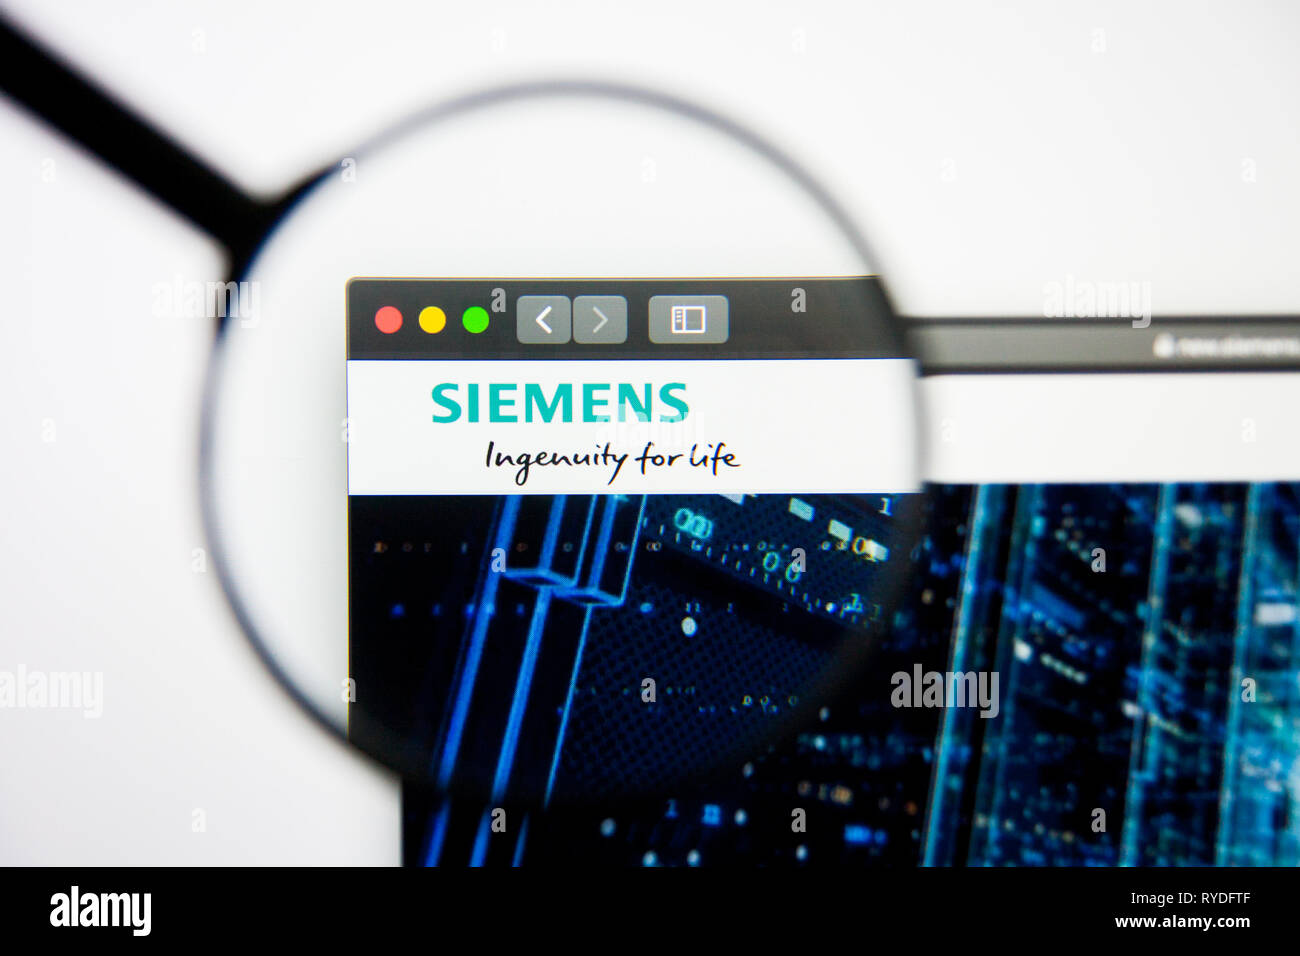 Los Angeles, Californie, USA - 5 mars 2019 - Siemens accueil du site. Logo Siemens visible sur l'écran d'affichage, de rédaction d'illustration Banque D'Images